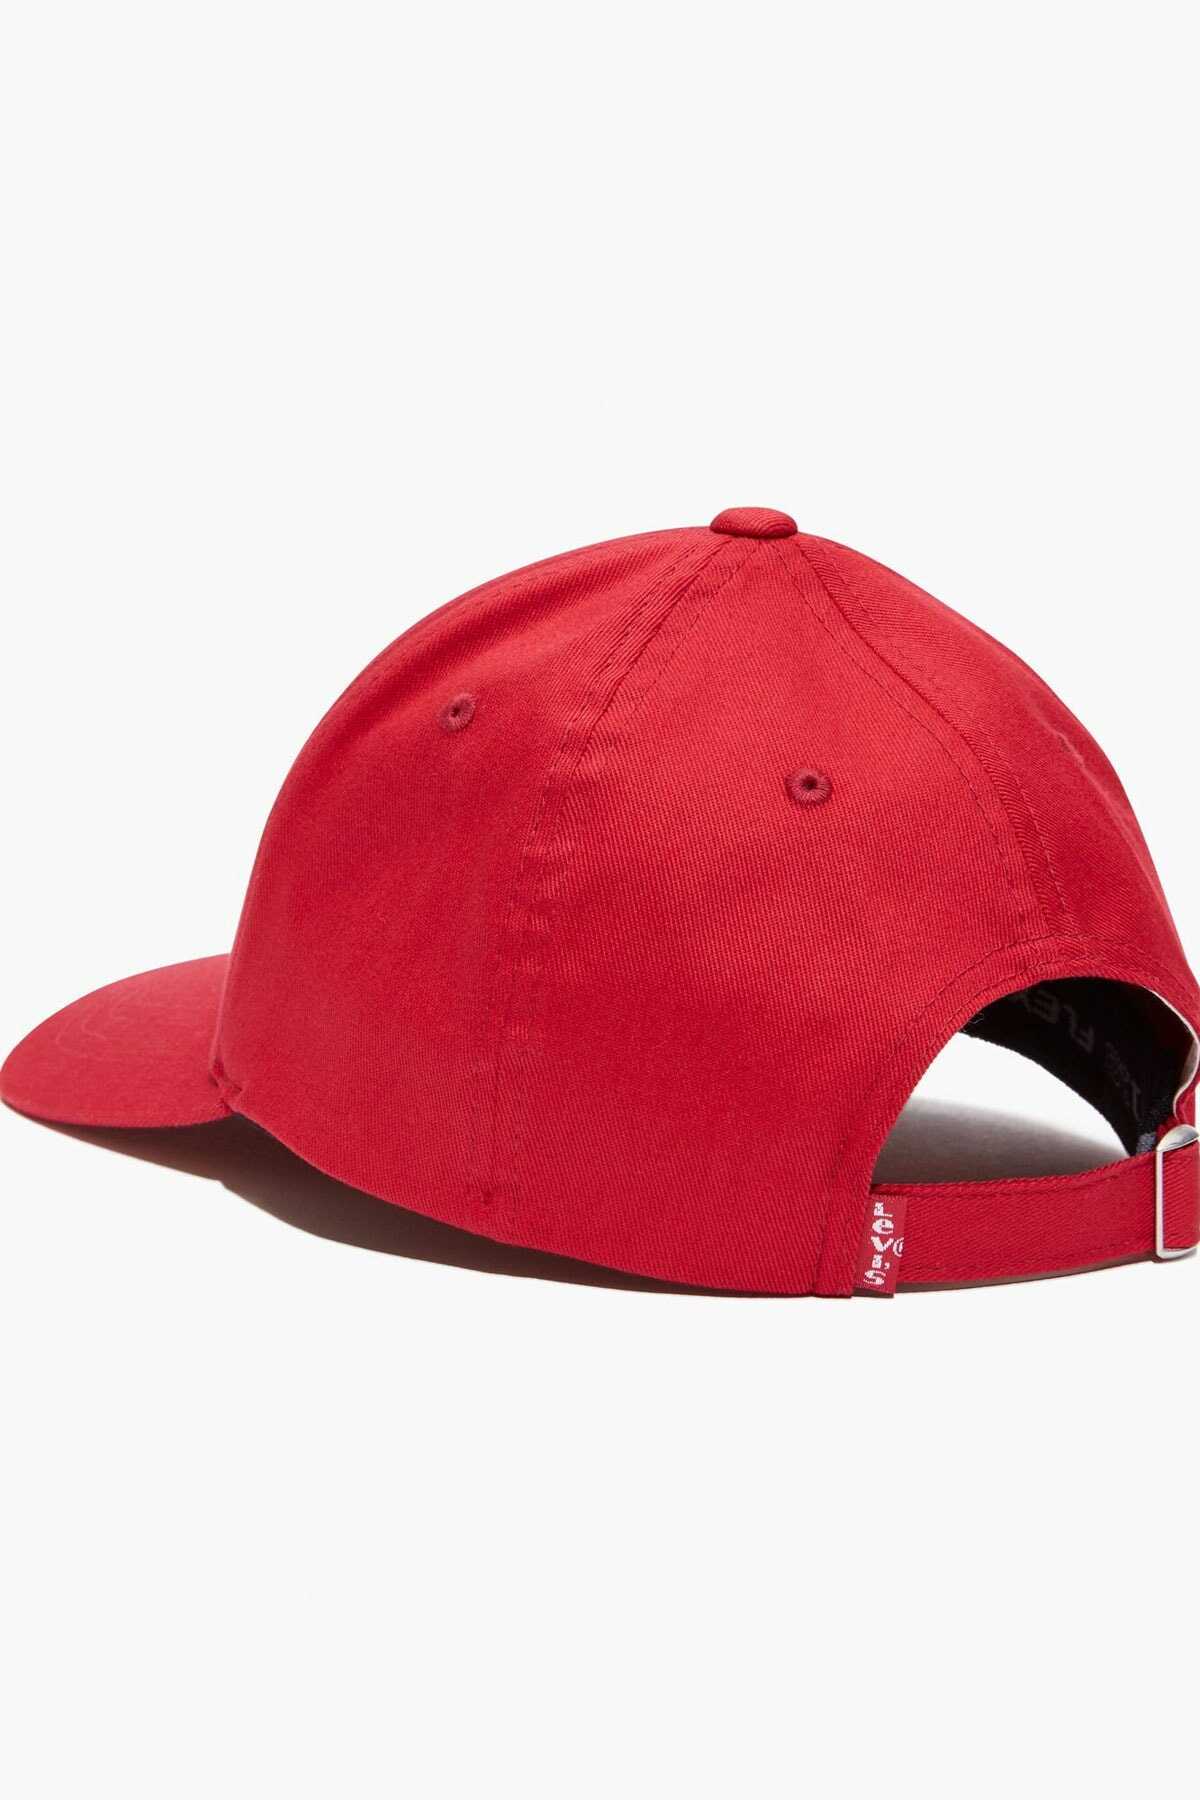 کلاه کپ ورزشی یونیسکس قرمز کد 38021-0270 برند Levi's 